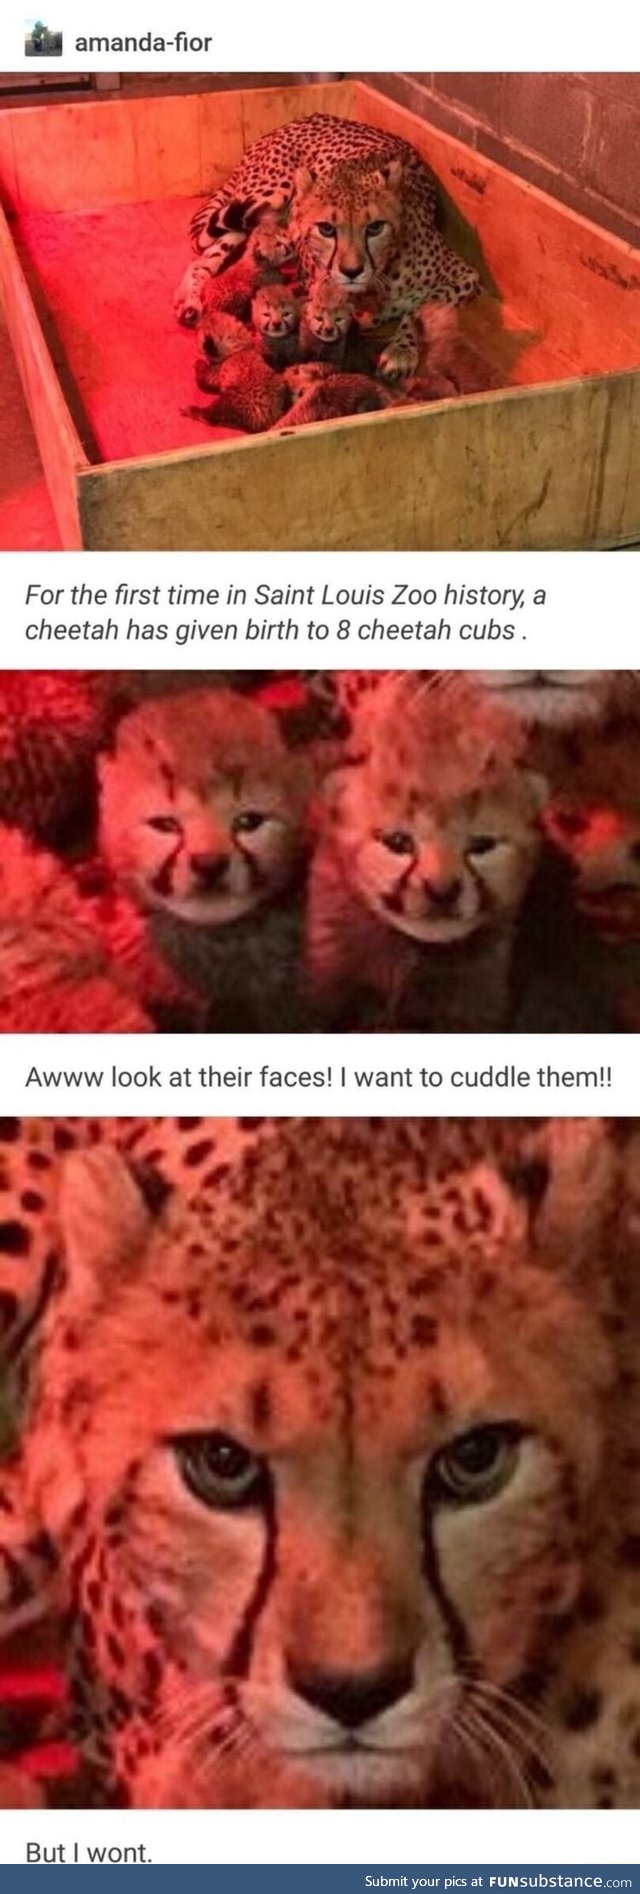 Eight cheetah cubs